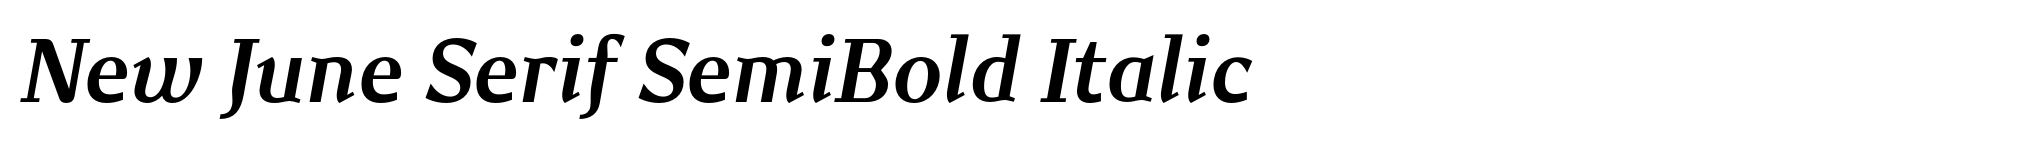 New June Serif SemiBold Italic image